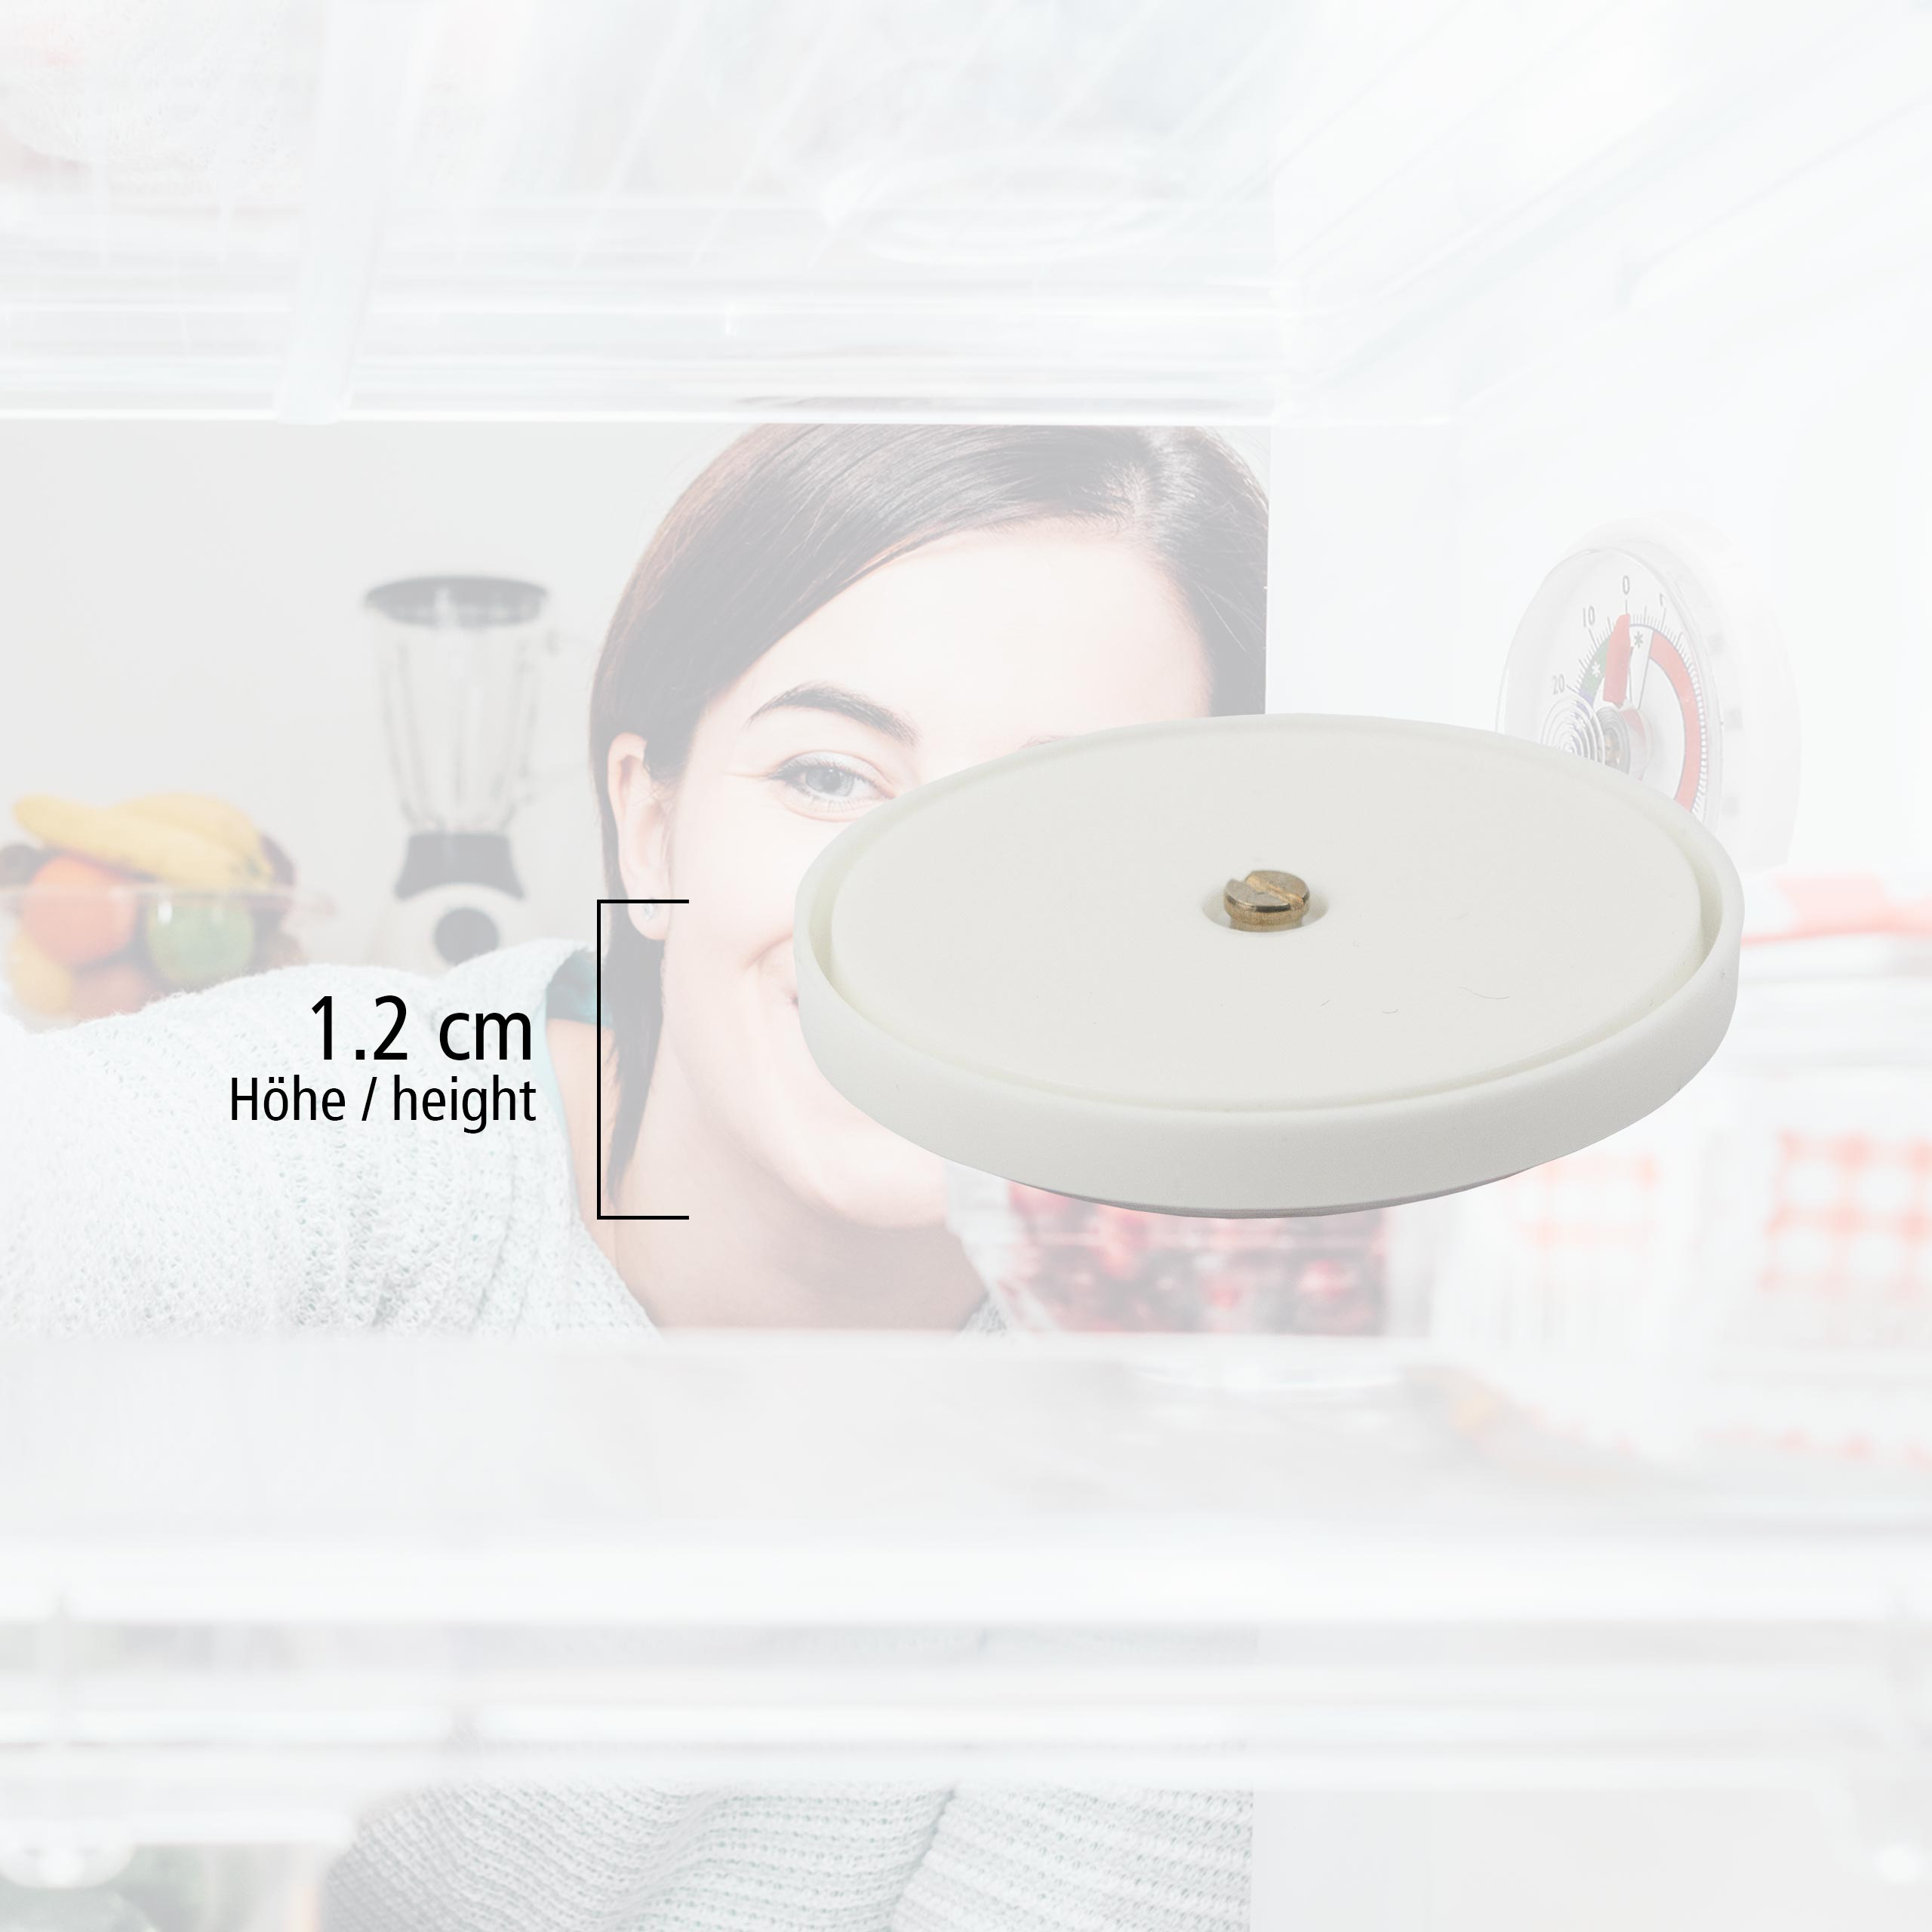 LANTELME 5 Küchenhelfer-Set Stück Kühlschrankthermometer